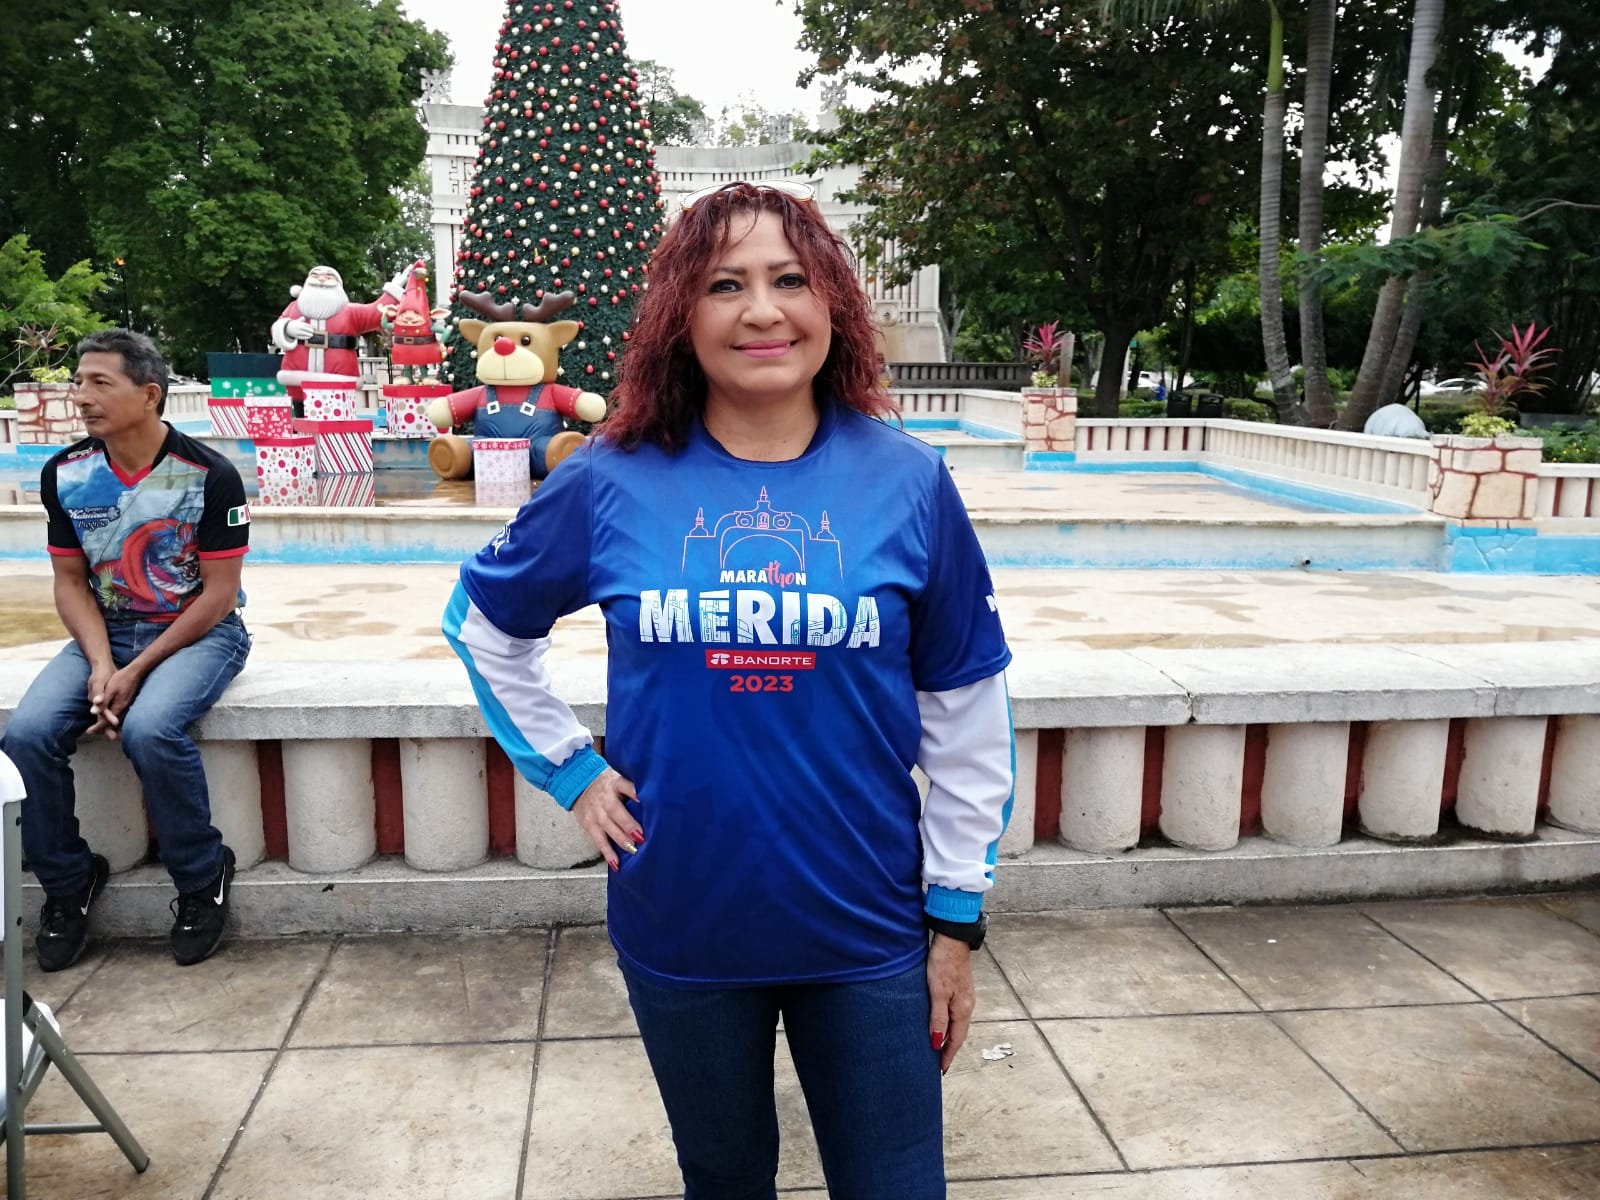 Cerca de 2 mil personas se preparan para participar en el Maratón de Mérida 2023